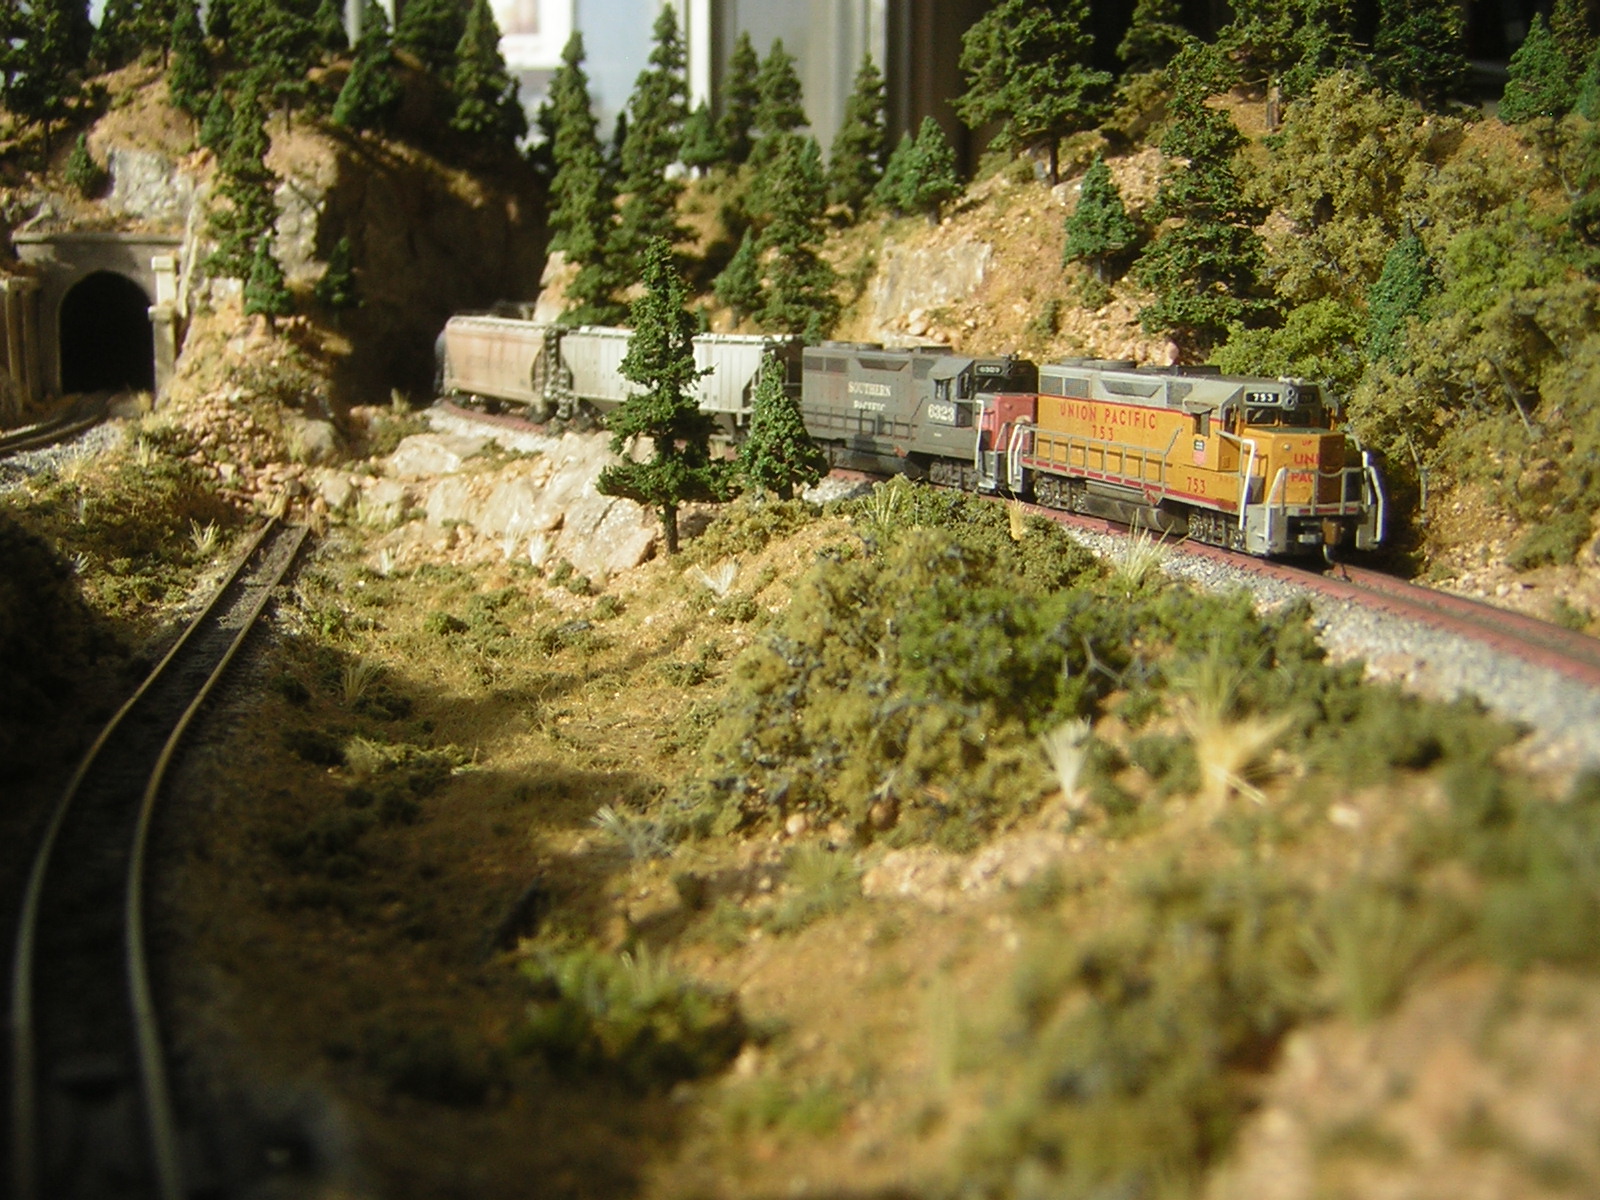 z scale model railway